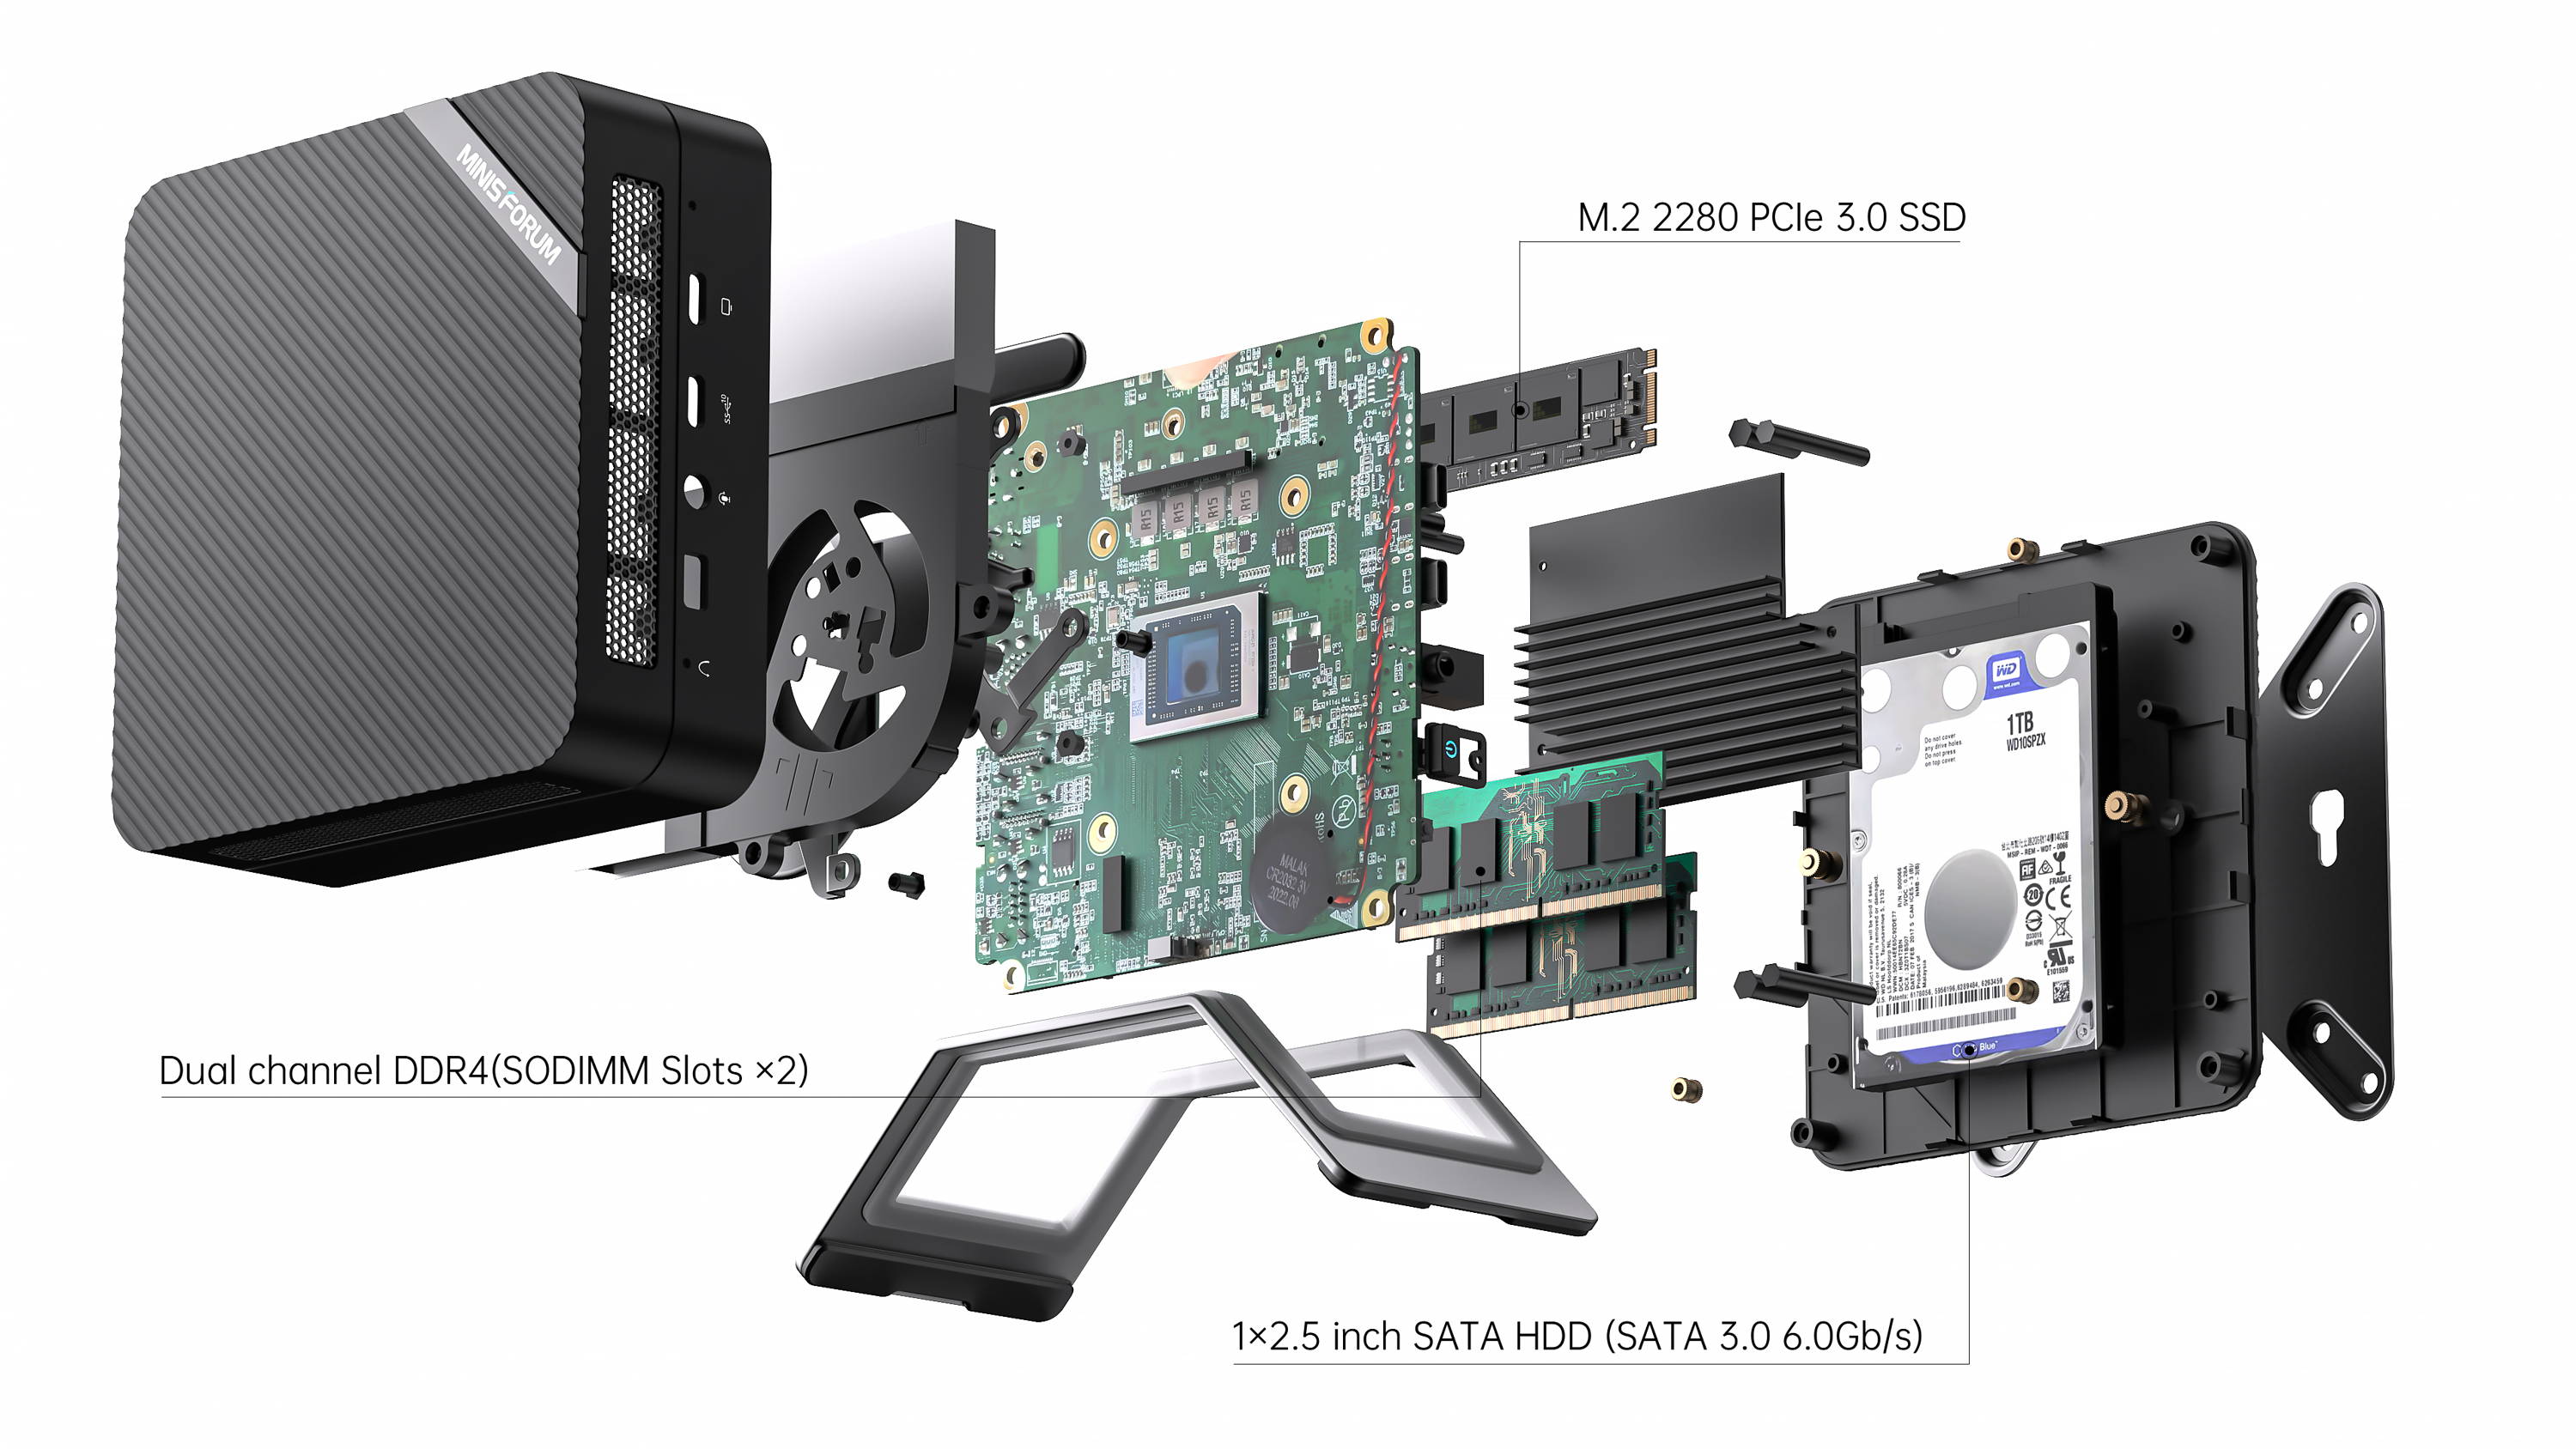 COOFUN UM590 Mini PC AMD Ryzen 9 5900HX,16GB RAM 512 GB PCIe SSD,Upgraded  HX90 Desktop PC, 2 x HDMI Ports, 1 x USB Type-C, 4 x USB 3.2 Type A, Wifi6